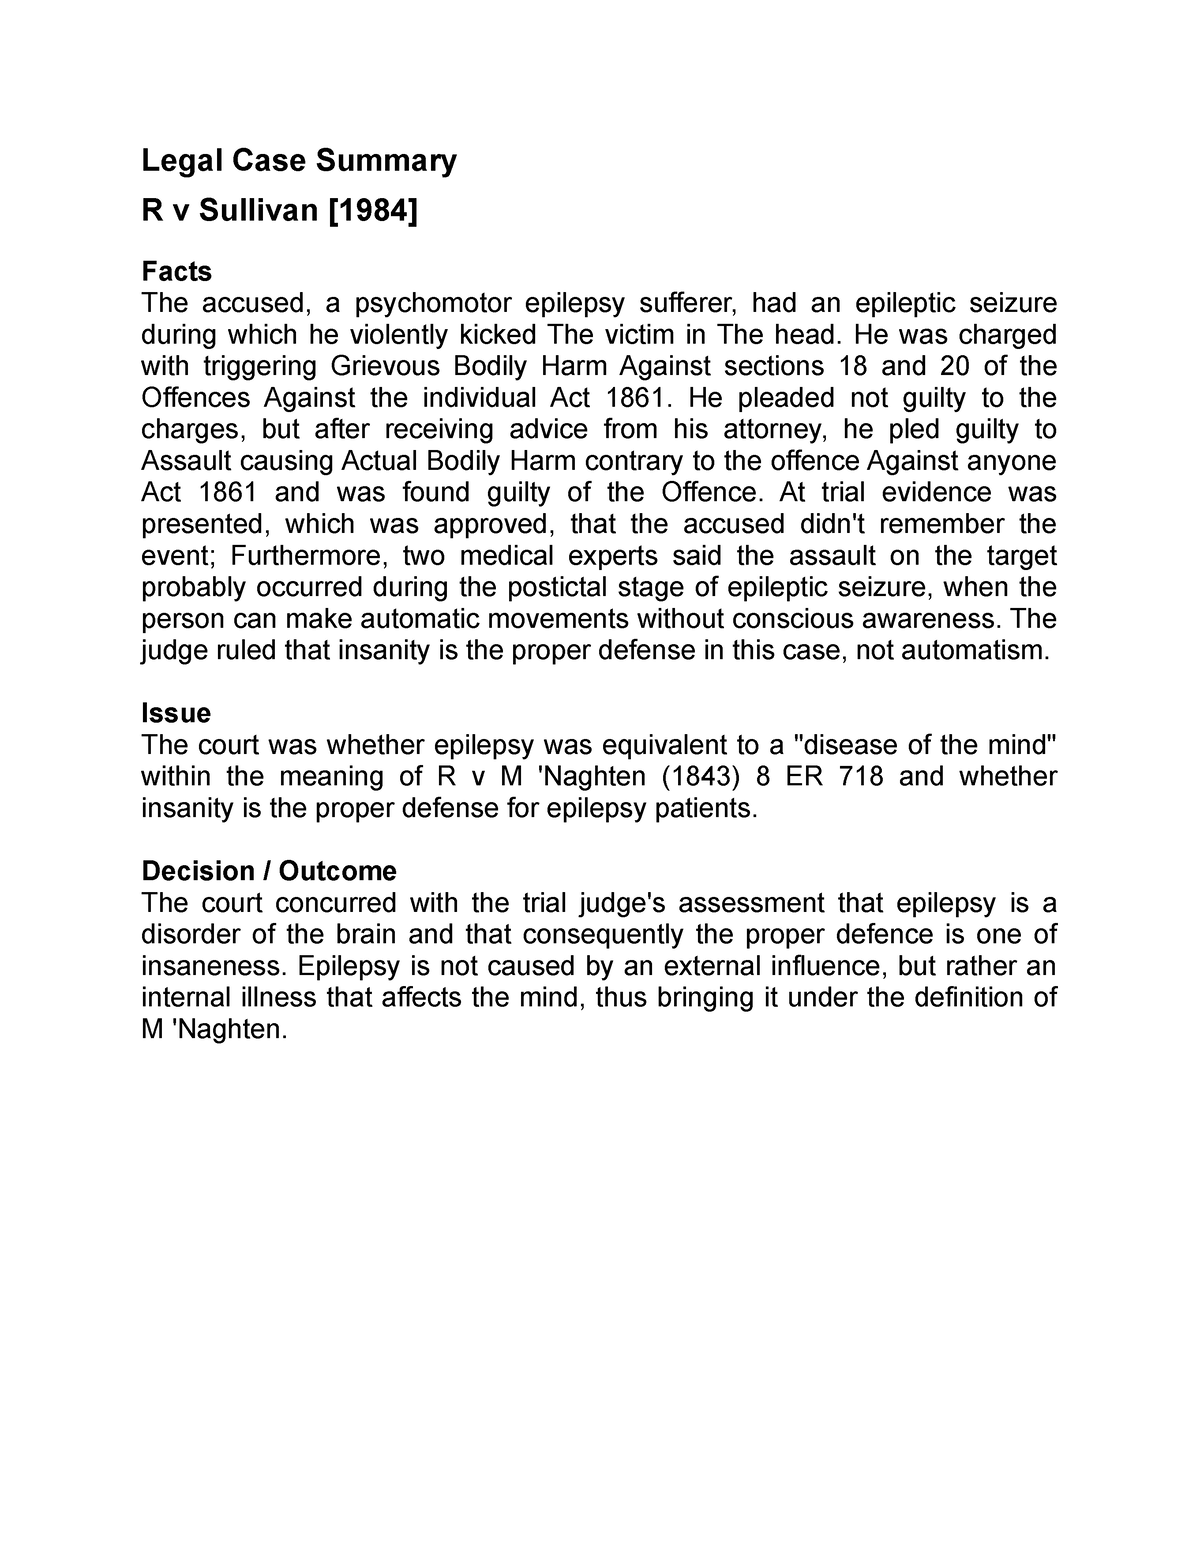 R v Sullivan Criminal Law Legal Case Summary R v Sullivan 1984